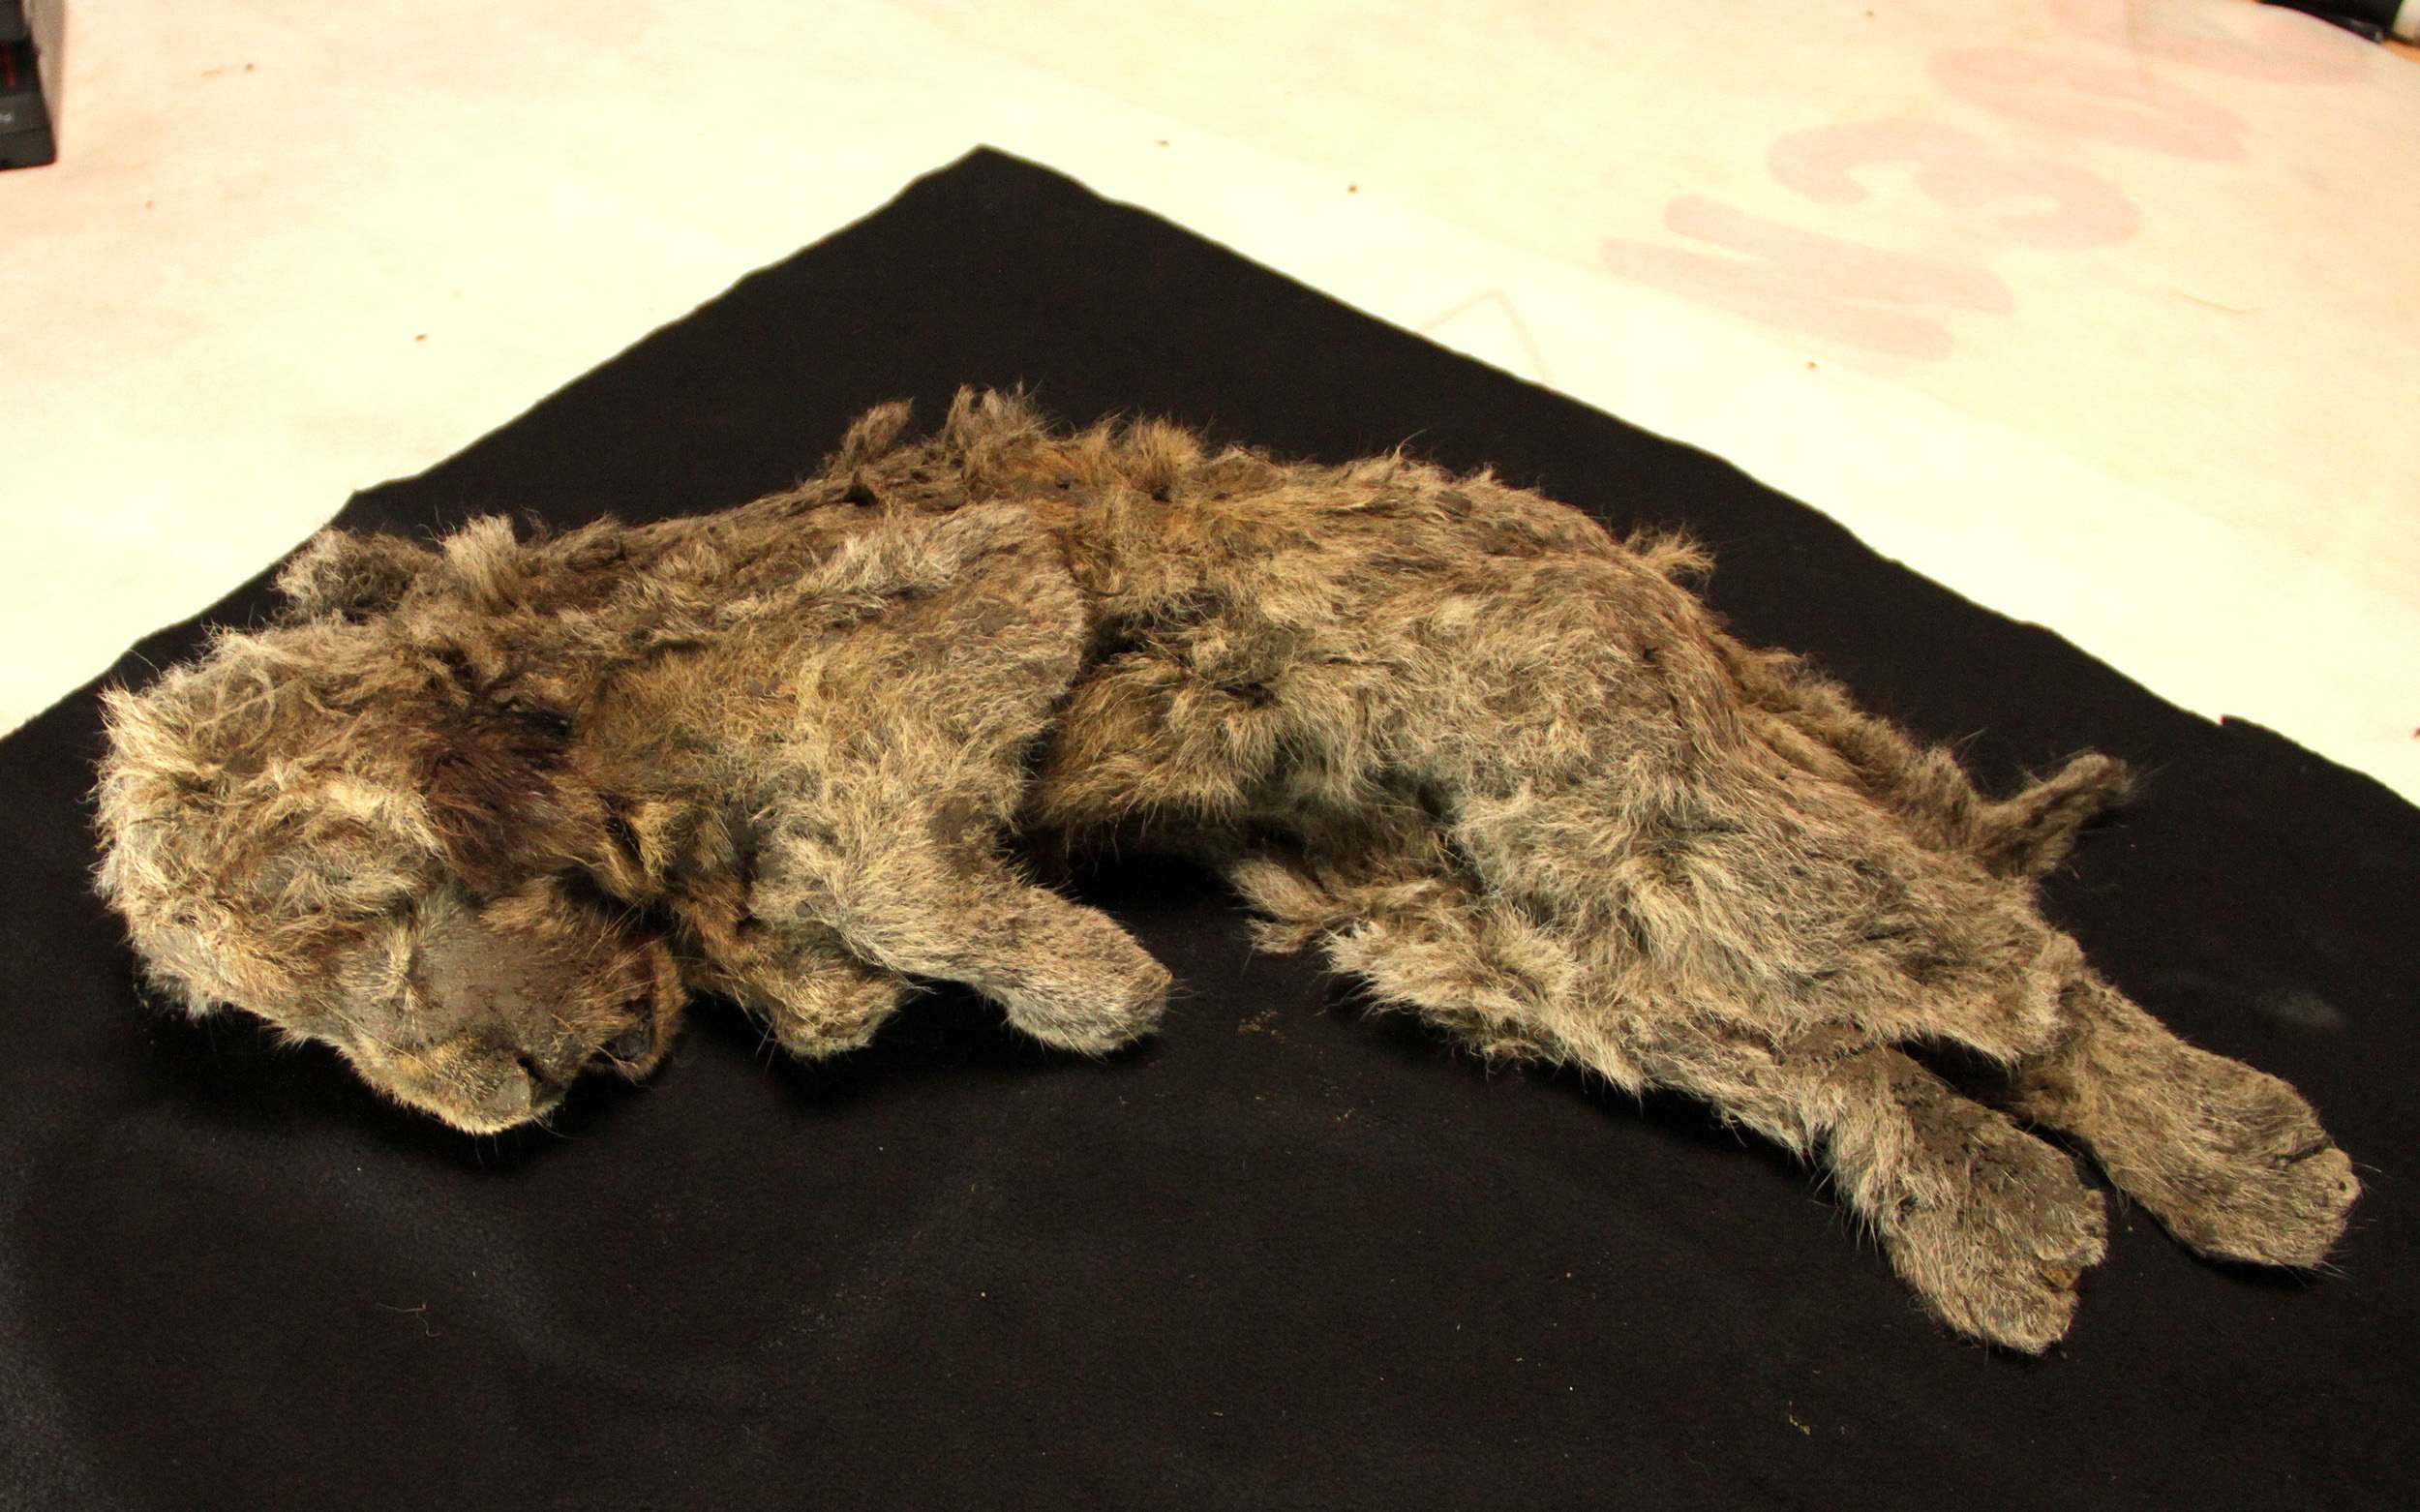 Permafrost တွင်တွေ့ရှိရသော လှိုဏ်ဂူအတွင်း ခြင်္သေ့သားပေါက်များ မျိုးတုံးပျောက်ကွယ်သွားသော မျိုးစိတ်များ၏ အသက်ကို ဖော်ပြပေးခြင်း